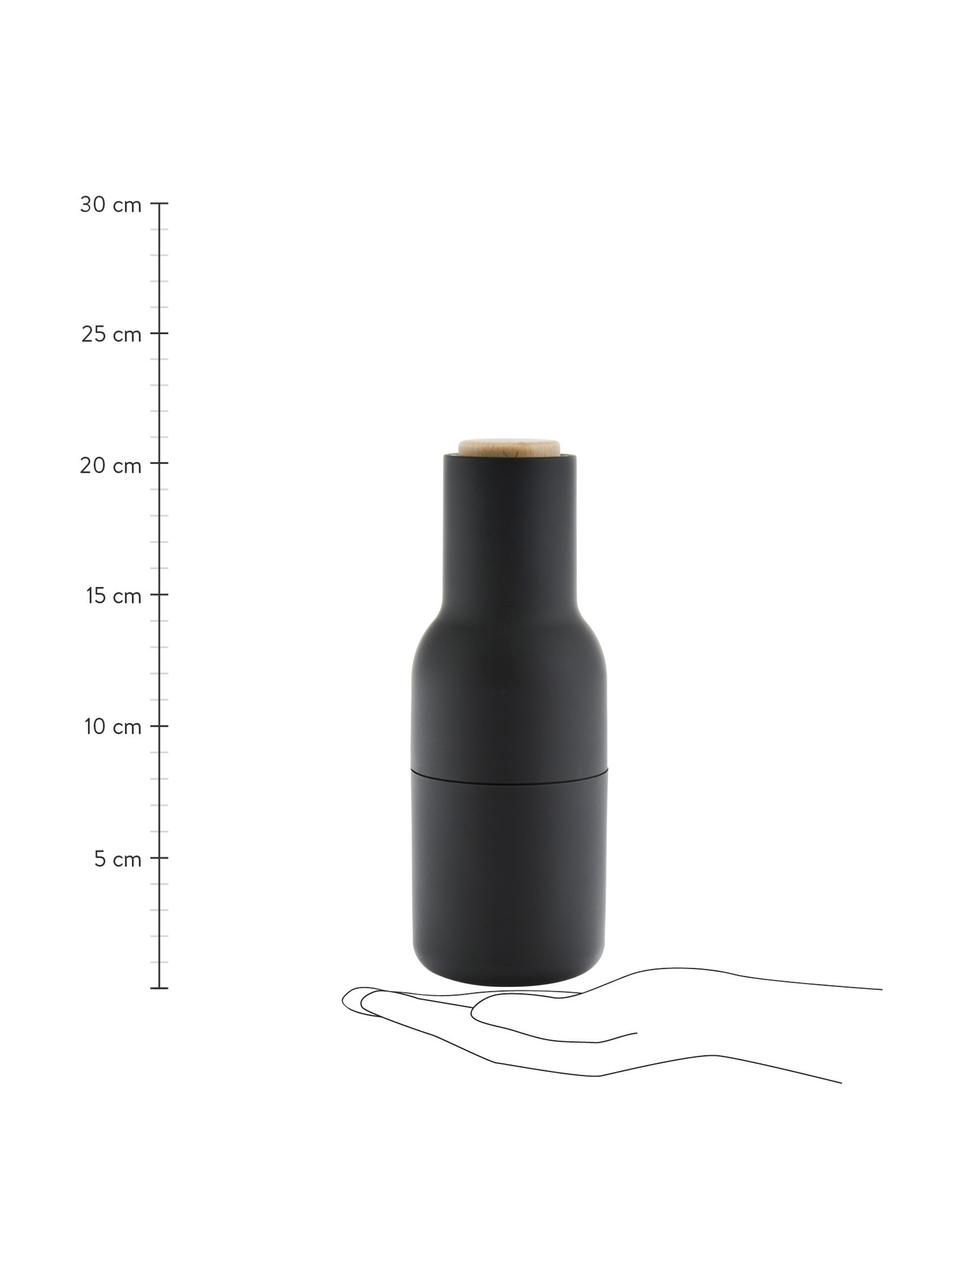 Sada designových mlýnků na sůl a pepř s dřevěnými víčky Bottle Grinder, 2 díly, Antracitová, světle šedá, hnědá, Ø 8 cm, V 21 cm